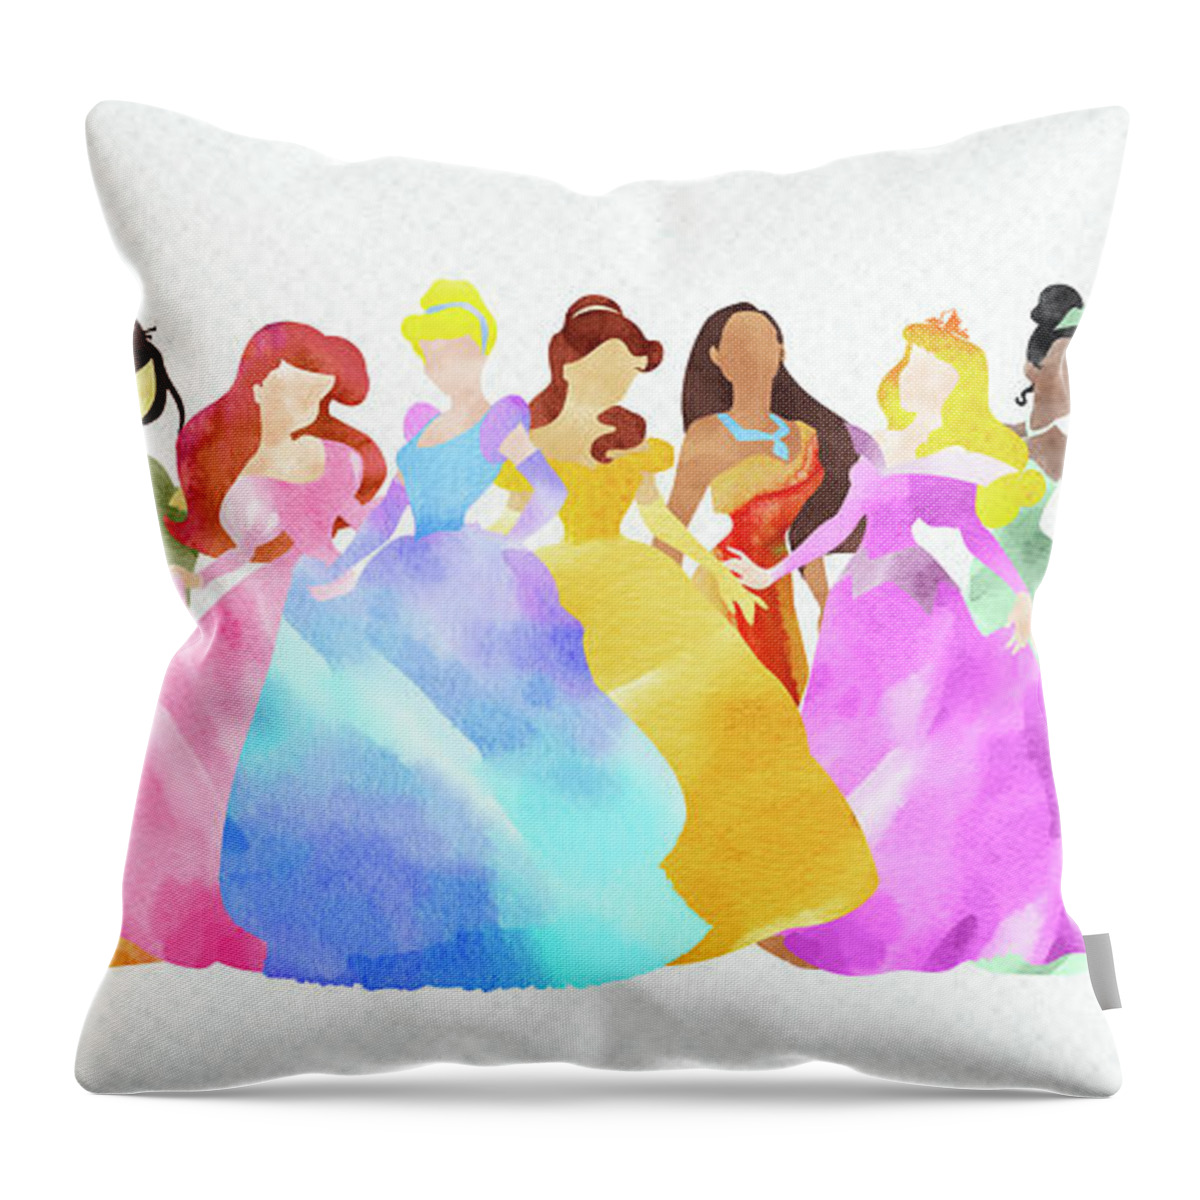 Disney Princess Pillow